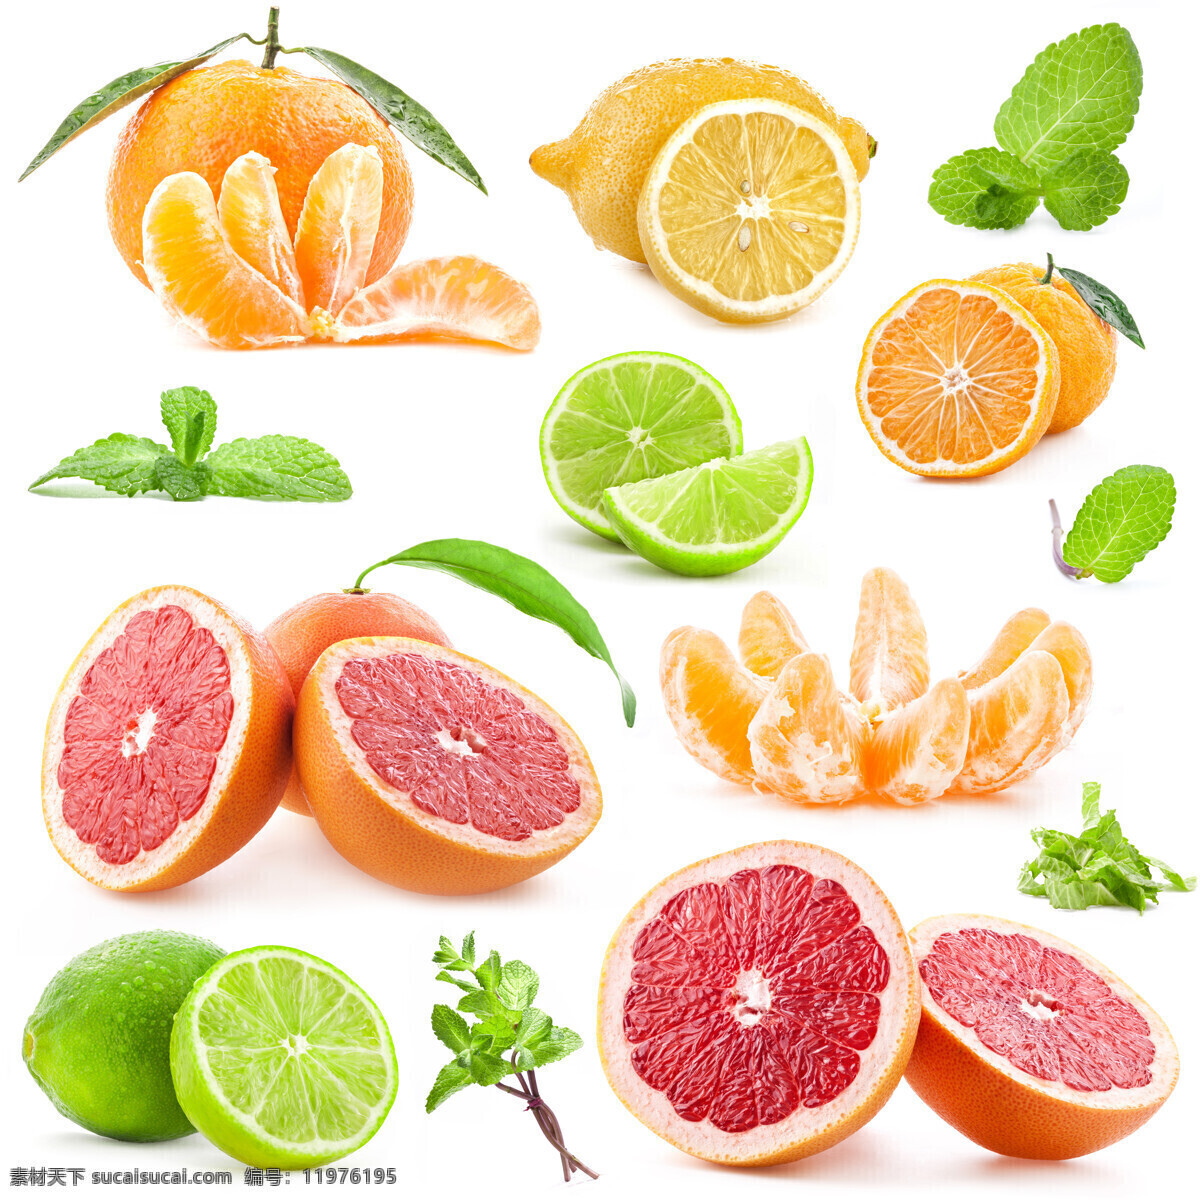 高清 水果 新鲜水果 桔子 柚子 橙子 柠檬 切开水果 绿叶 红心柚子 水果图片 餐饮美食